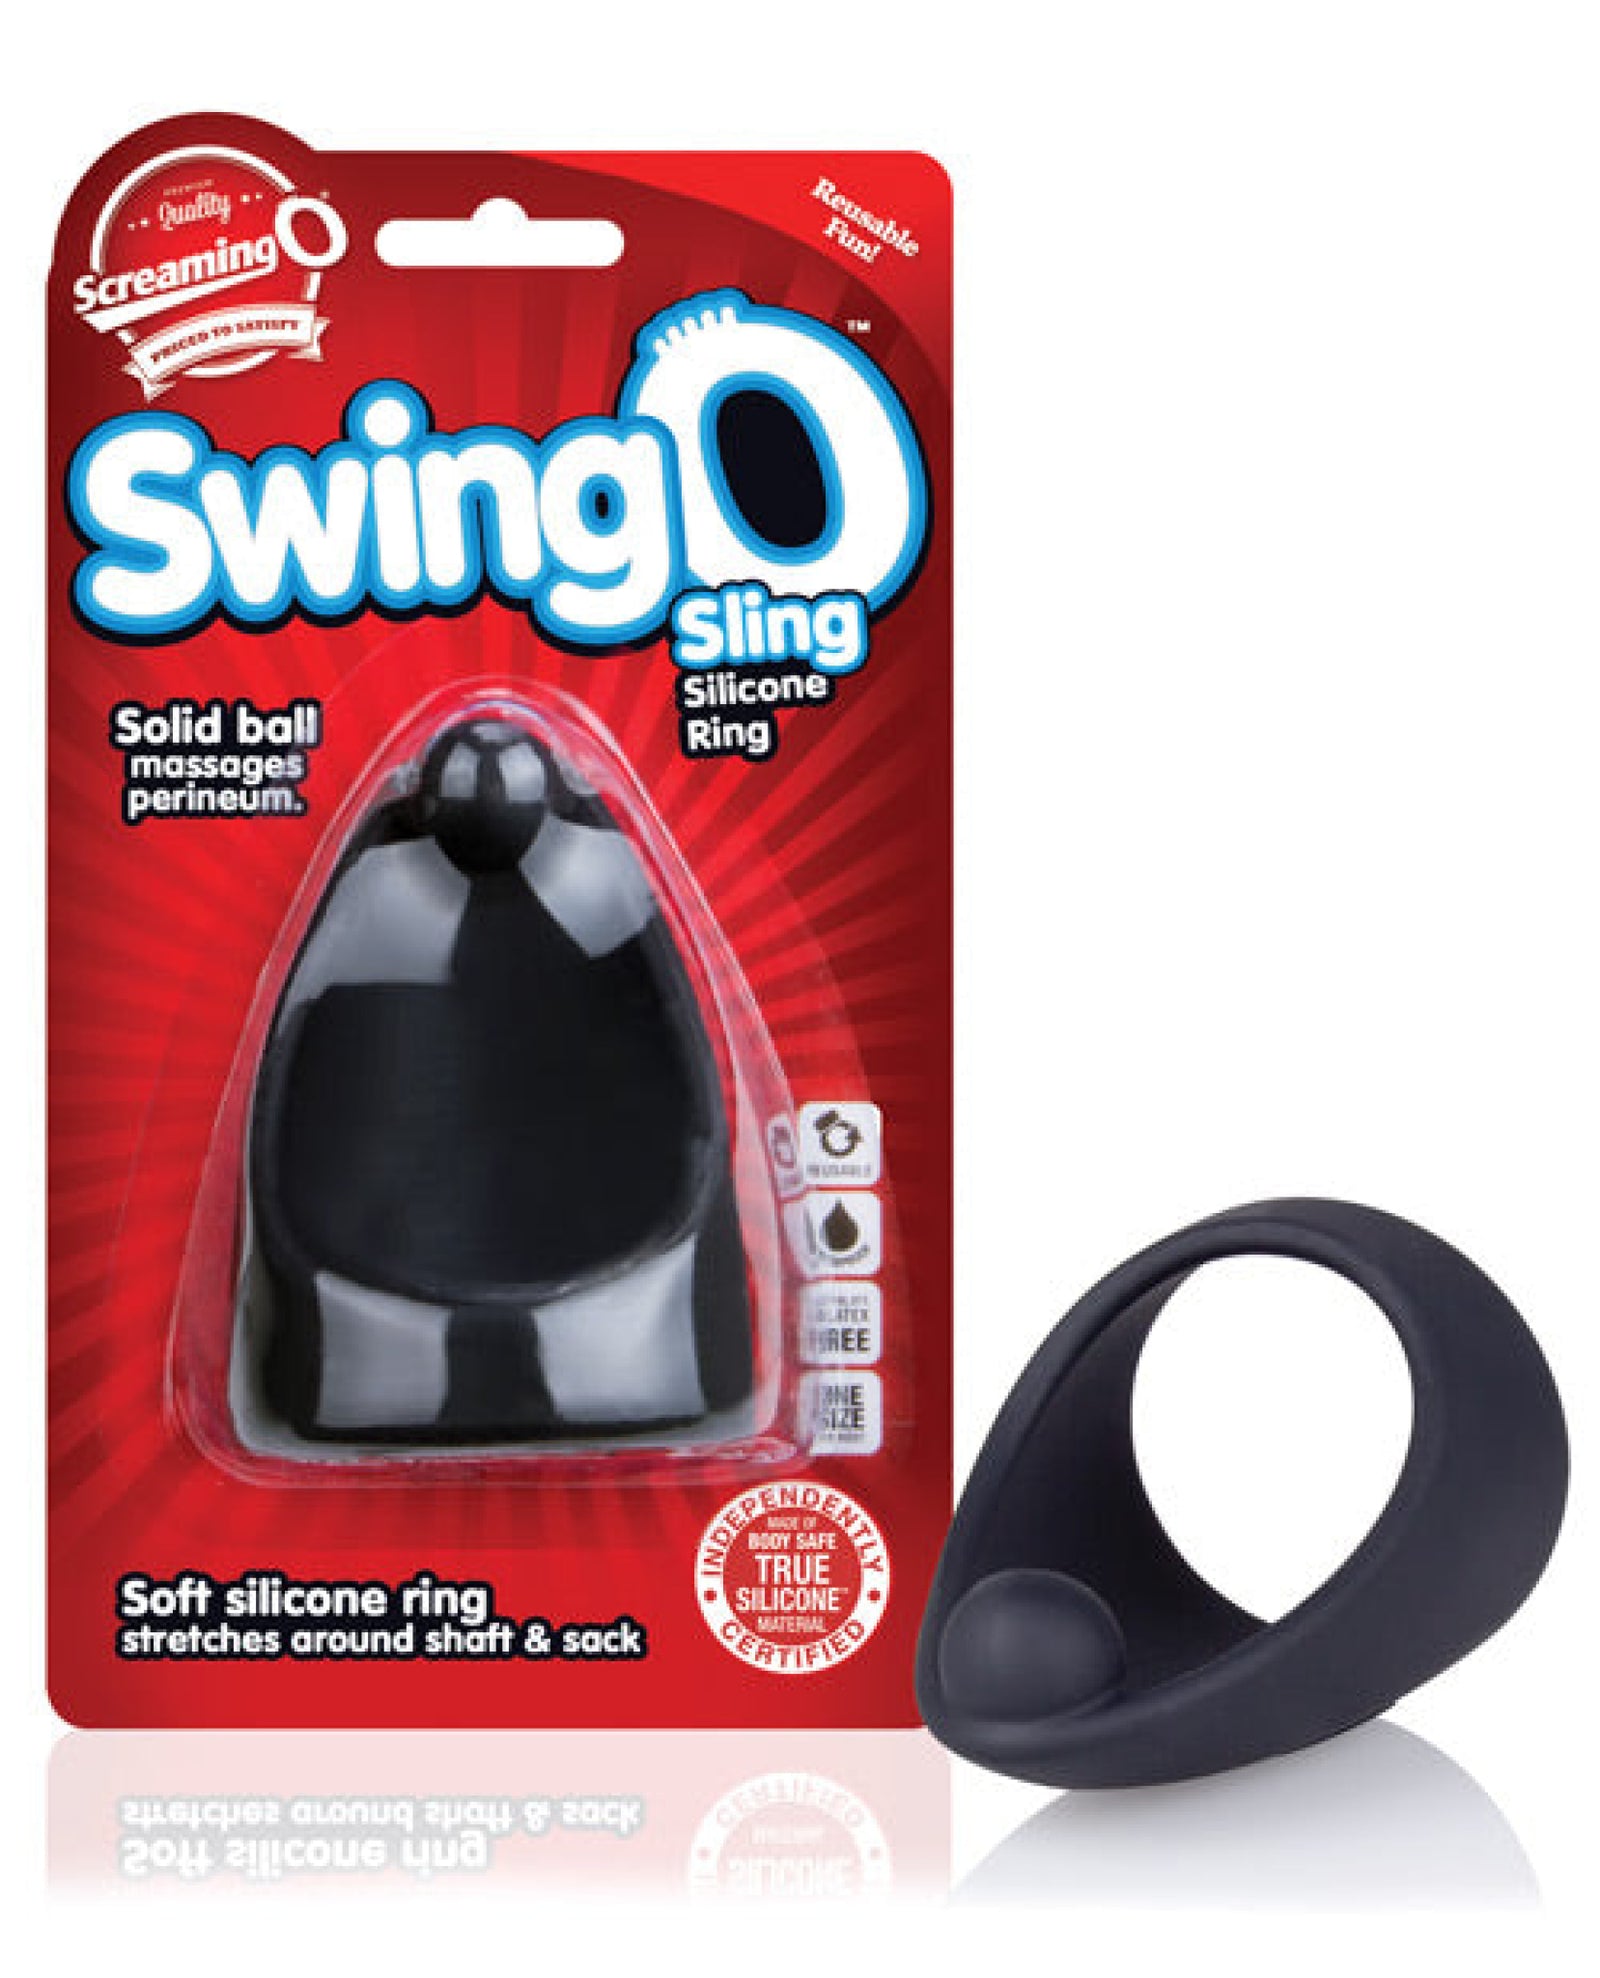 Screaming O Swingo Sling - Black Screaming O